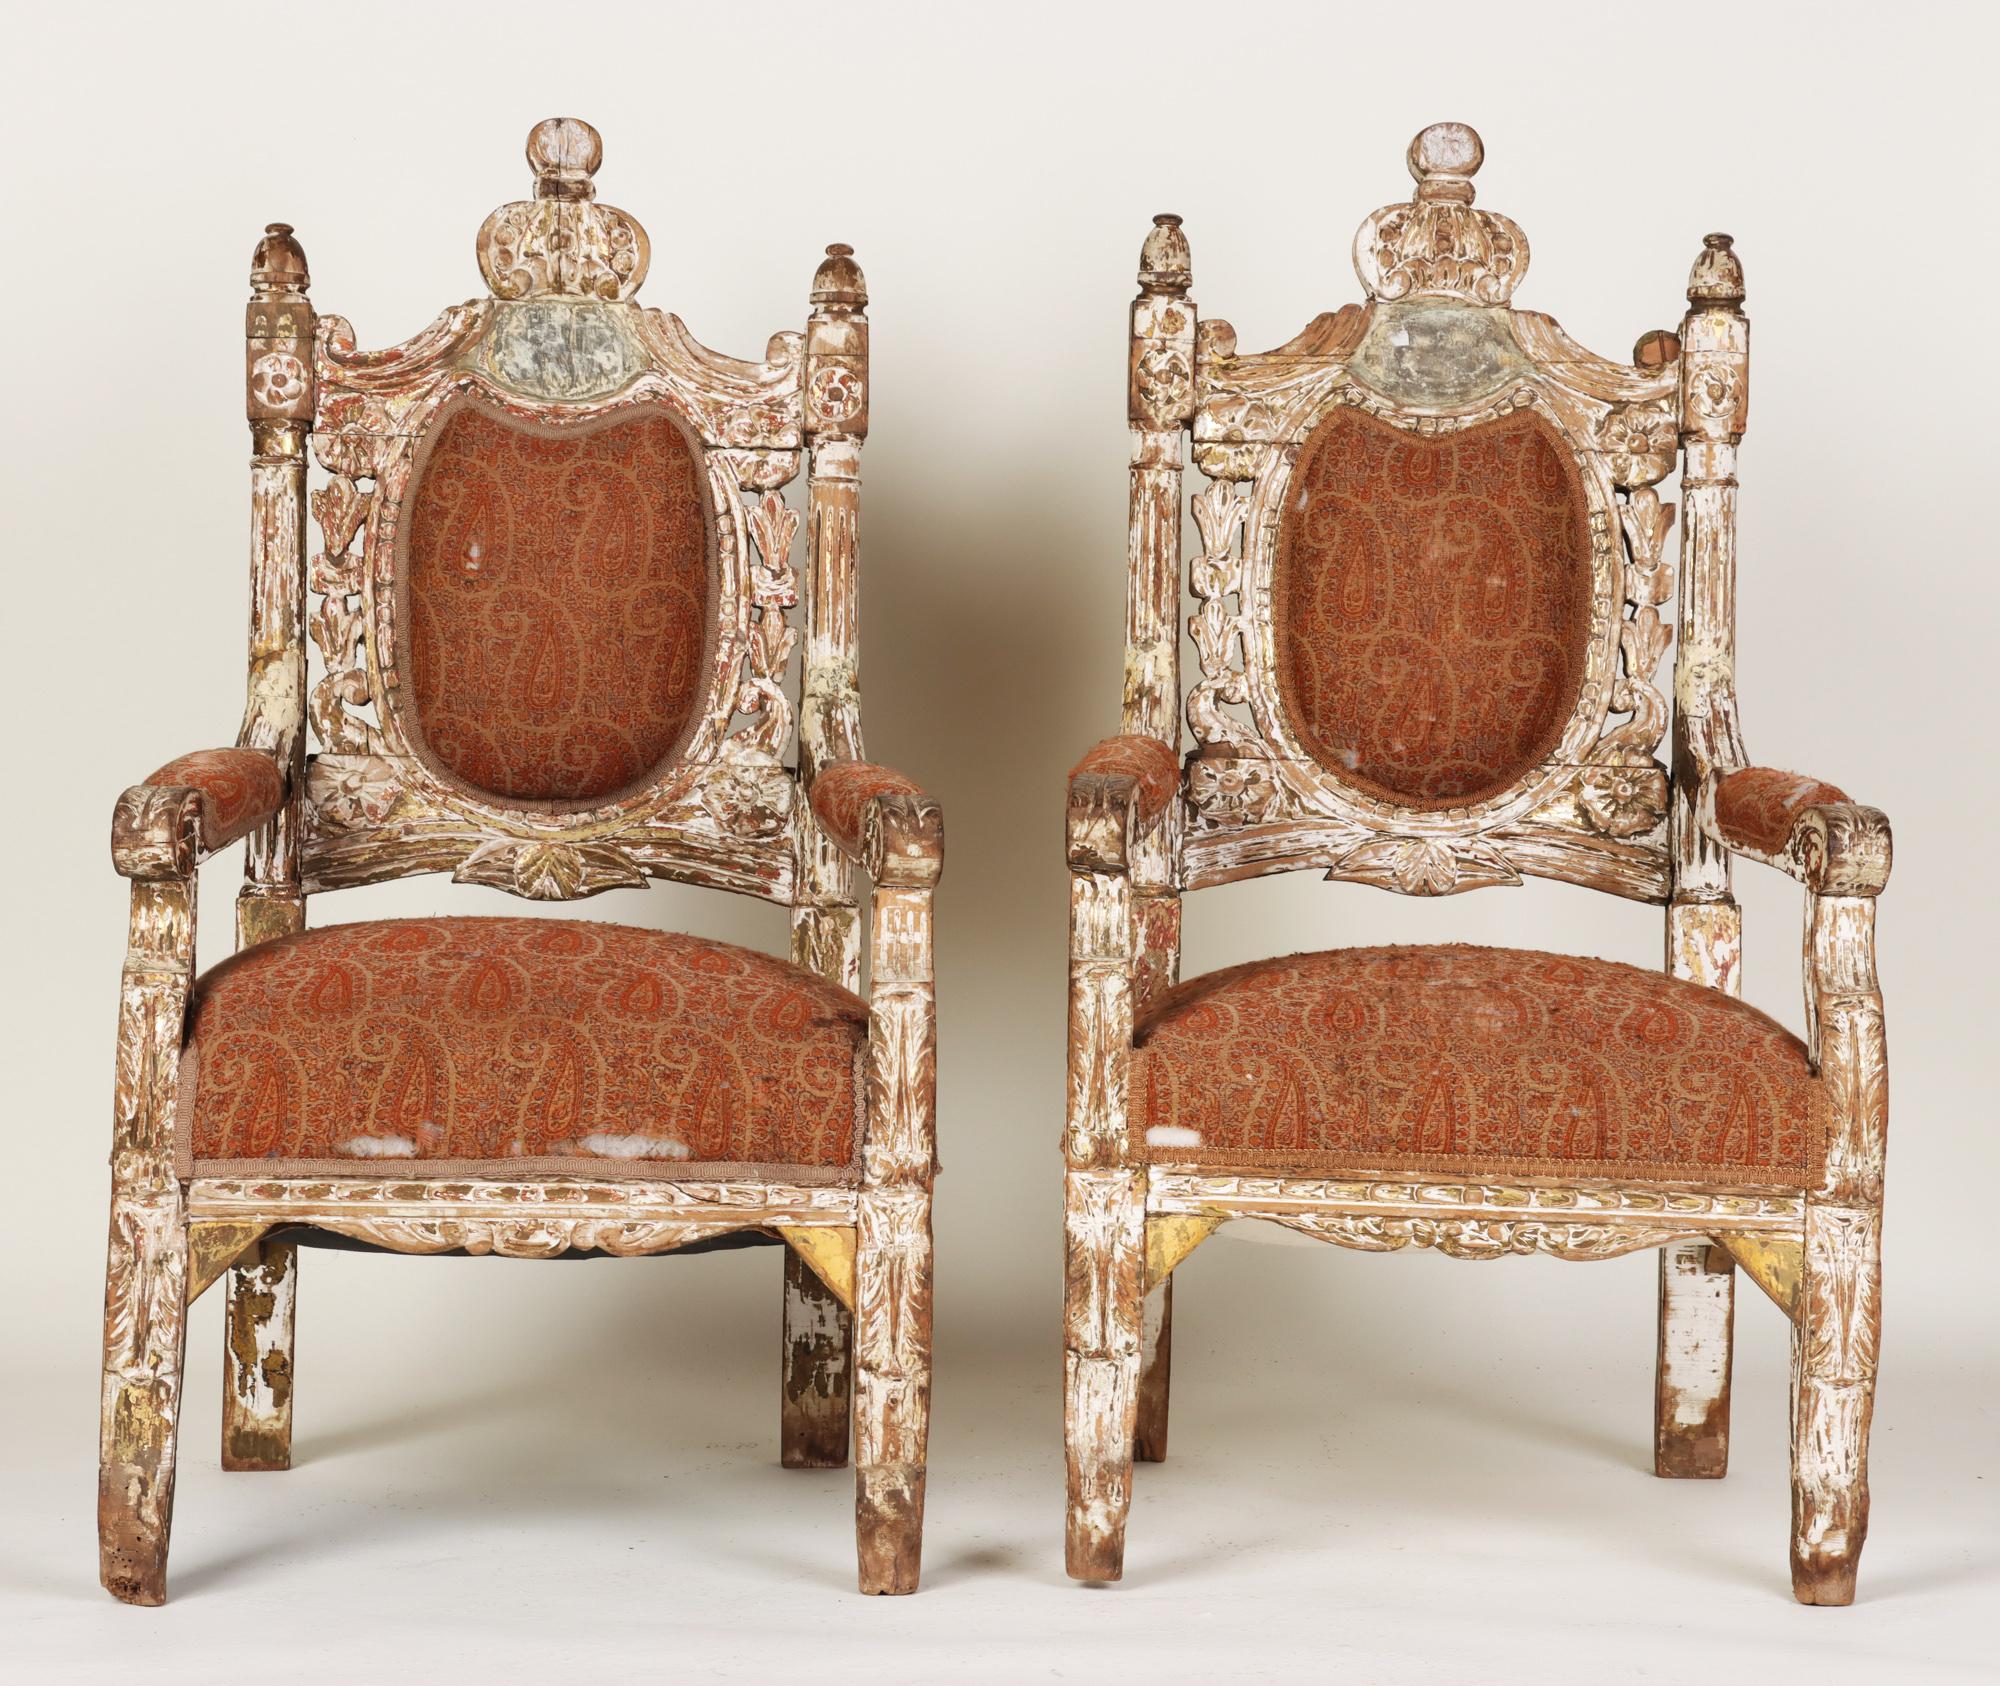 Une paire de fauteuils monumentaux italiens sculptés de style trône. Début du 19ème siècle. La dorure mélangée à un aspect naturel de chêne cérusé donne à ces chaises une belle patine. La tapisserie d'origine en crin de cheval est toujours intacte.